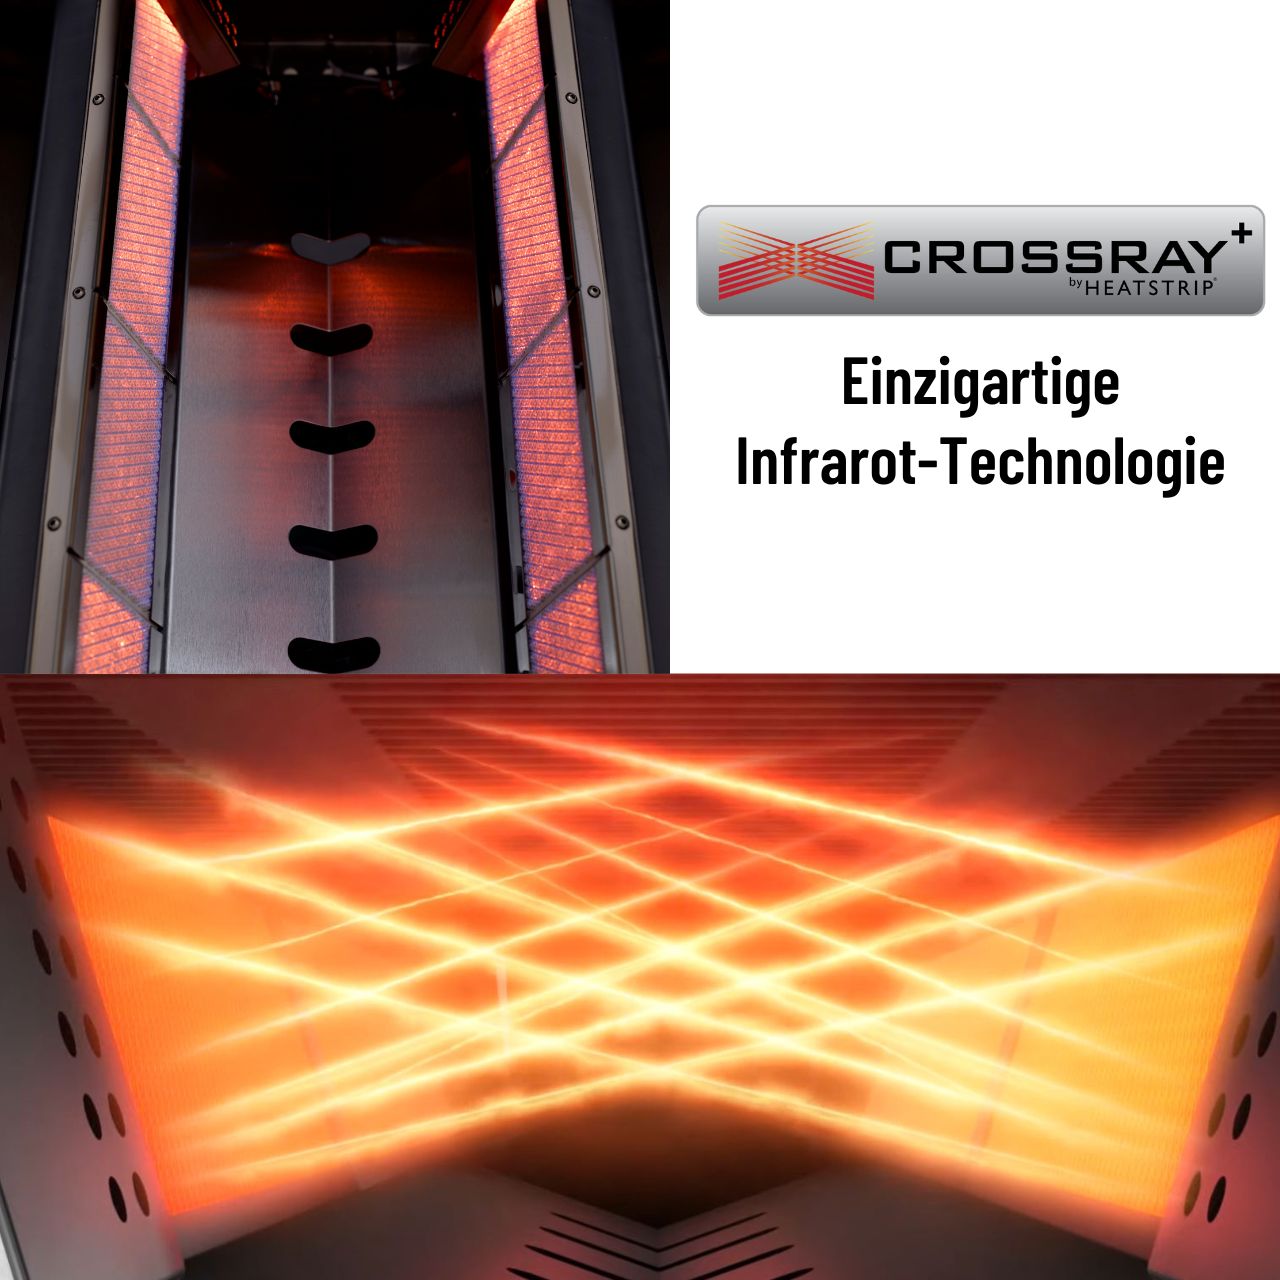 Crossray+ 2 Infrarot-Keramikbrenner, Gasgrill, 55 x 40 cm Gussroste